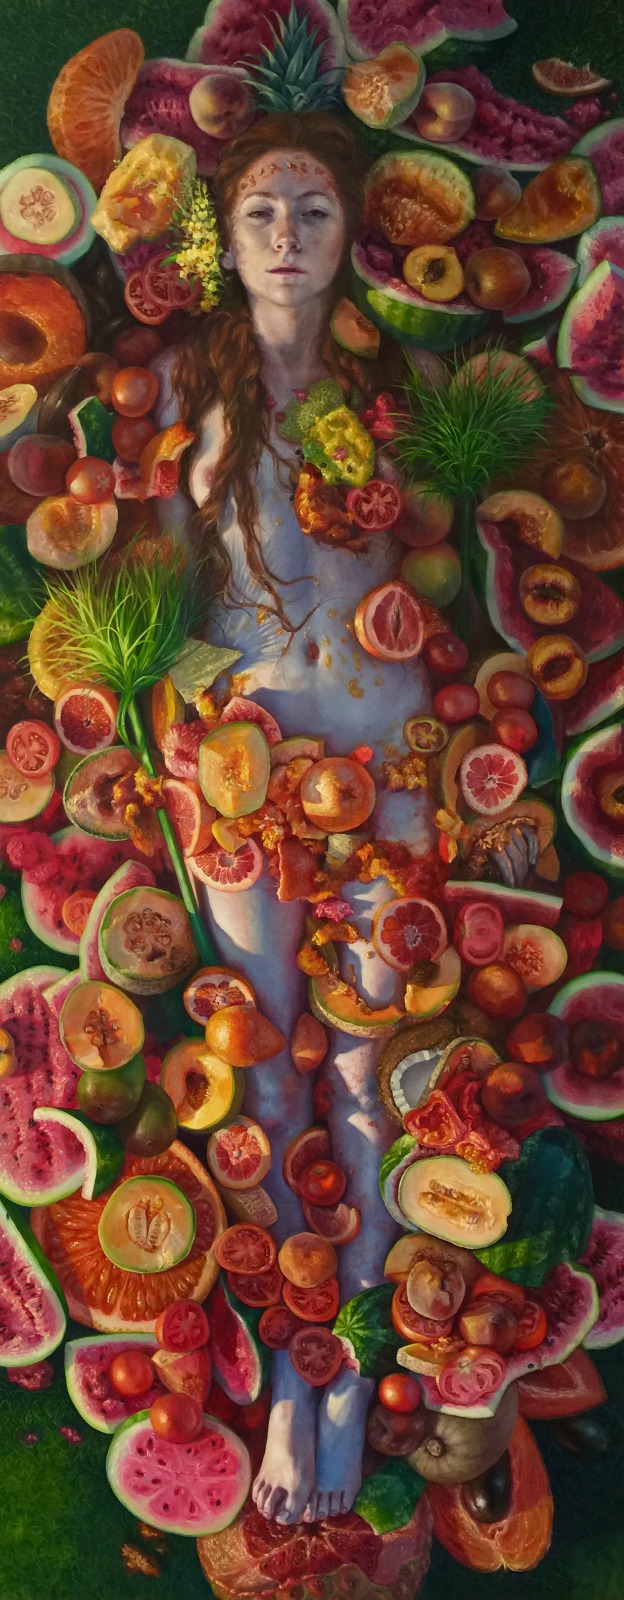 Fruit portraits artist has taste for desire | Boo York City